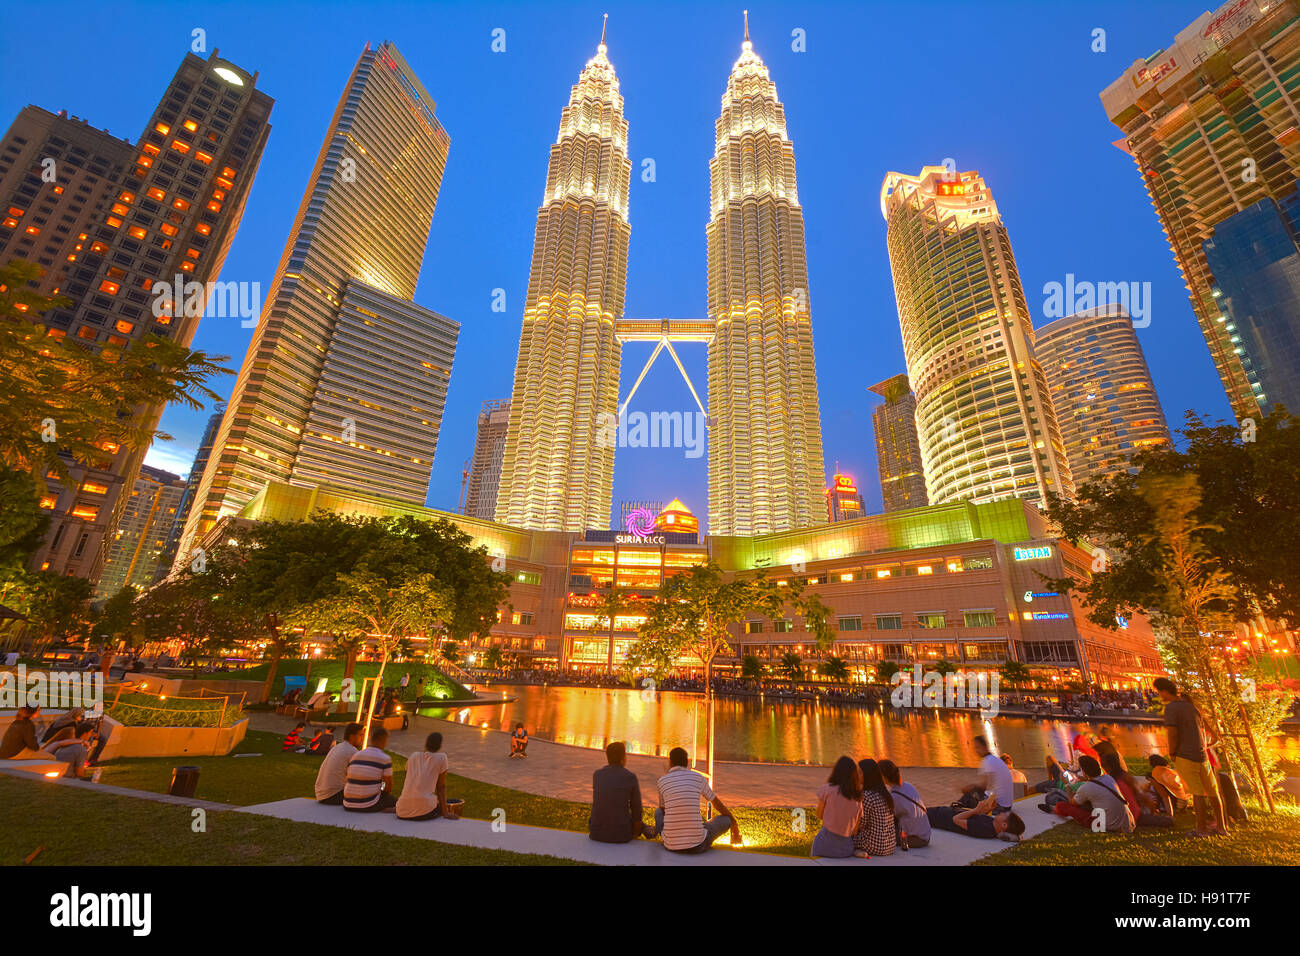 Night view of Petronas twin towers in Kuala Lumpur, Malaysia Stock Photo